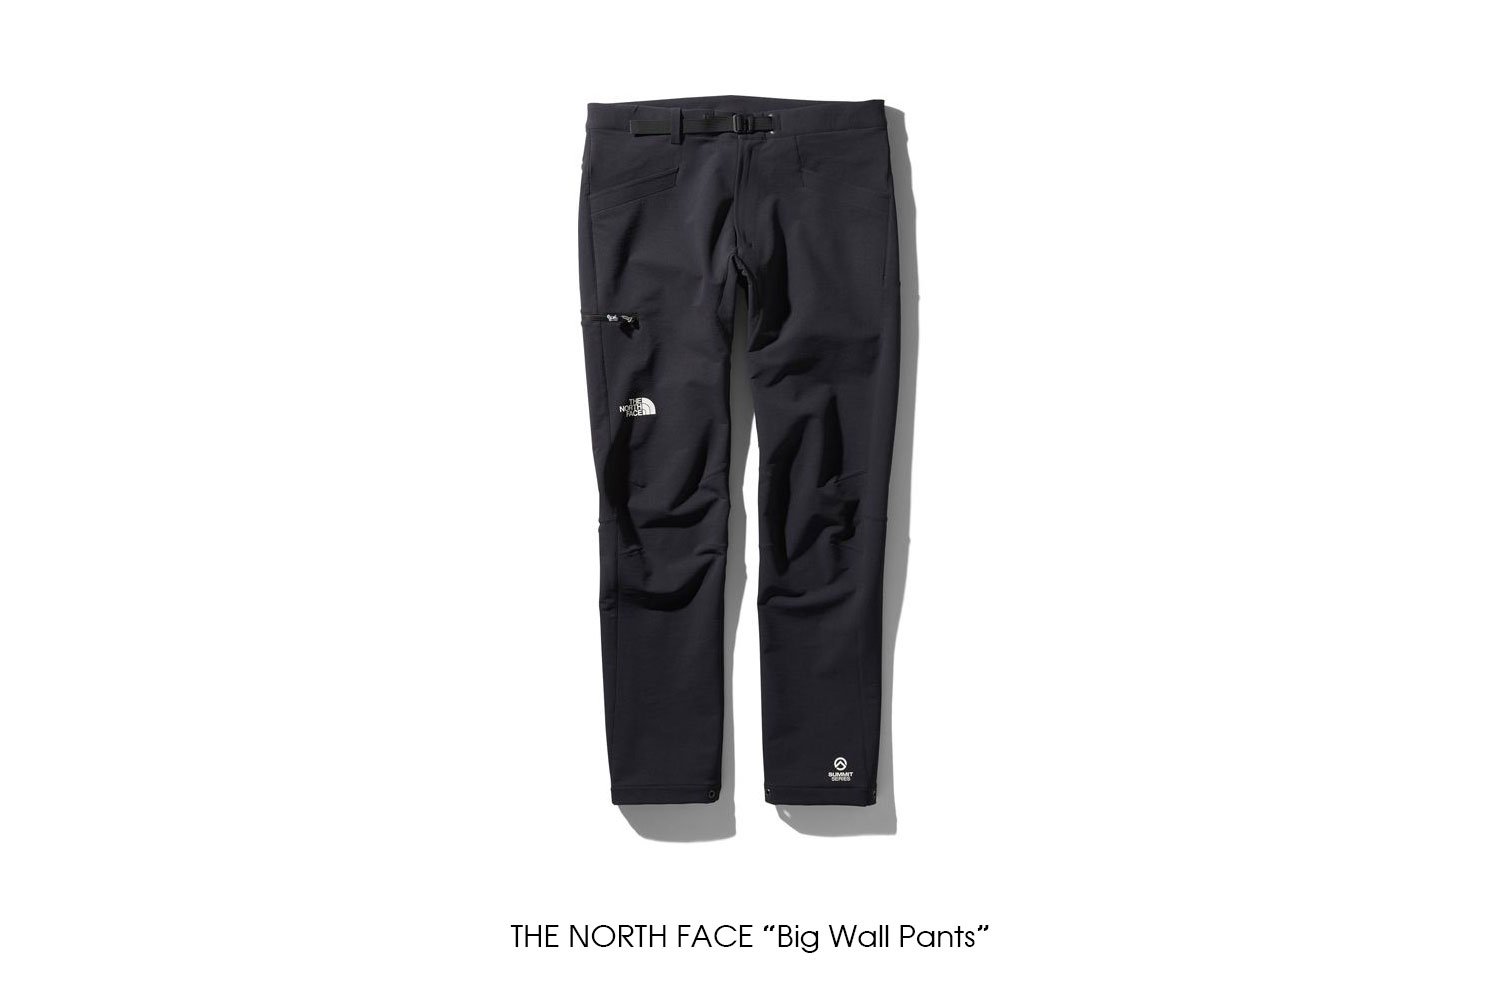 THE NORTH FACE "Big Wall Pants"